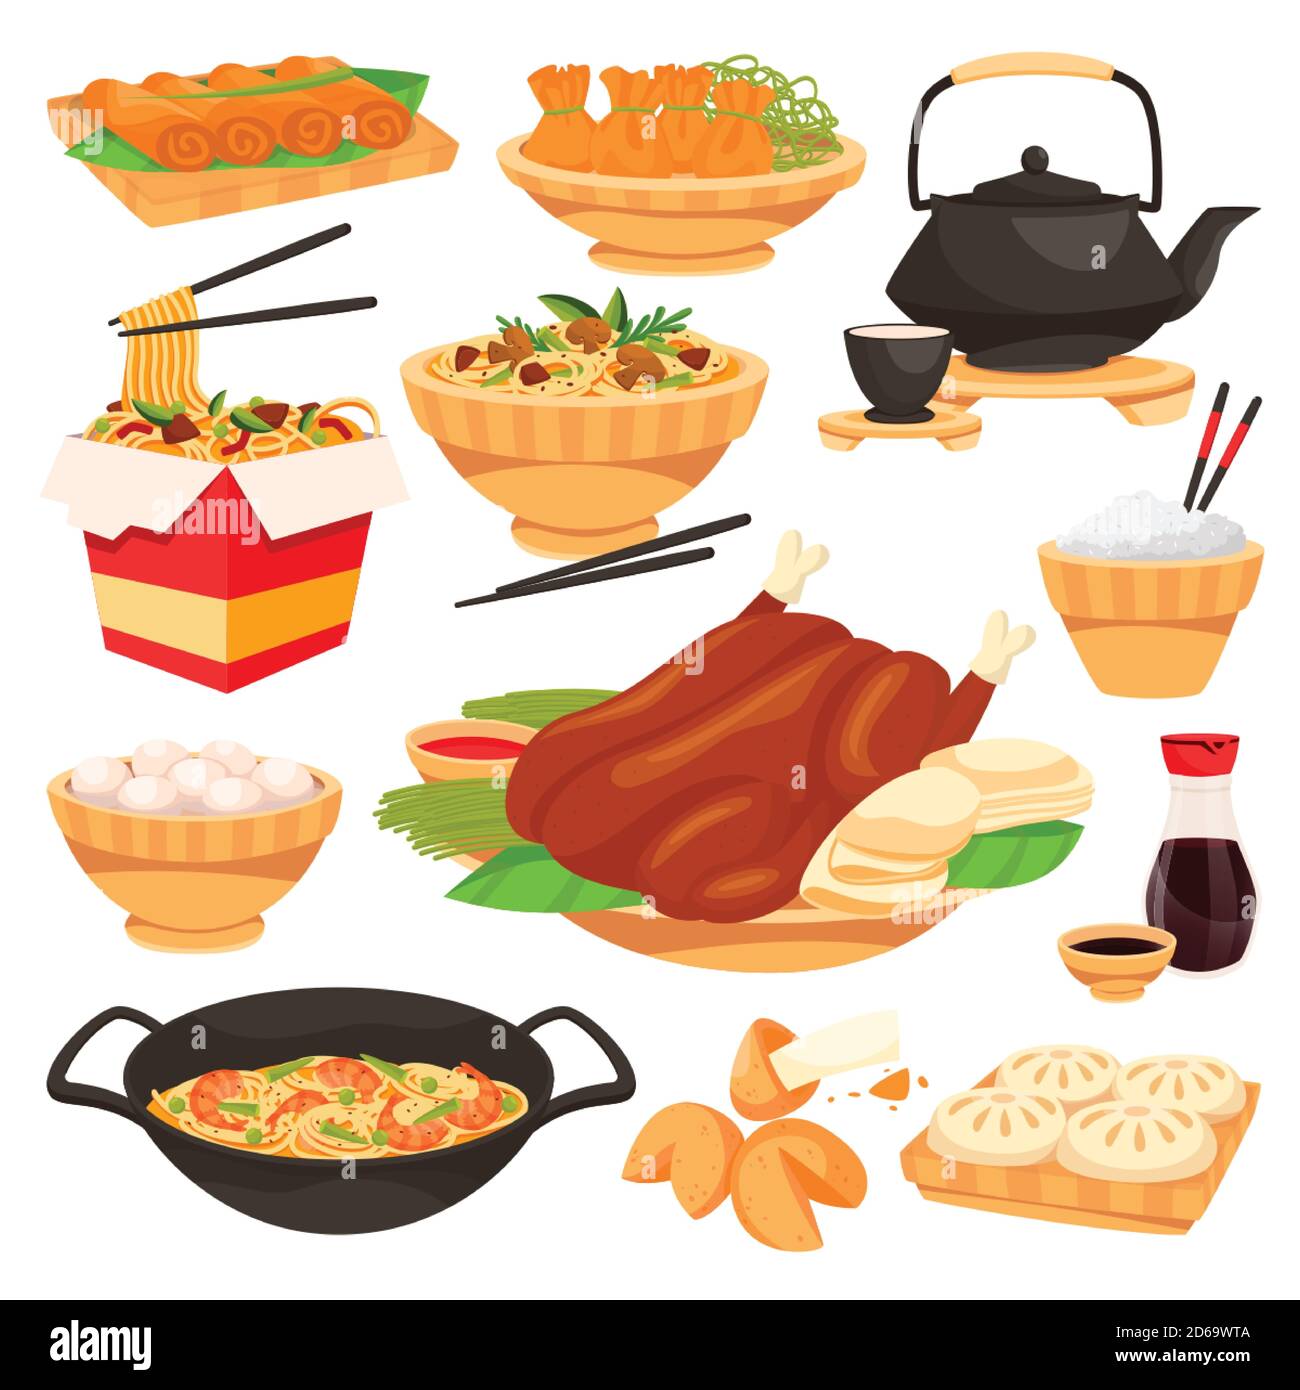 Traditionelle chinesische Speisen für den Urlaub. Vektor flache Cartoon-Illustration. Eine Gruppe isolierter gerichte der chinesischen Küche. Asiatisches Restaurant oder Café Menüdesign el Stock Vektor